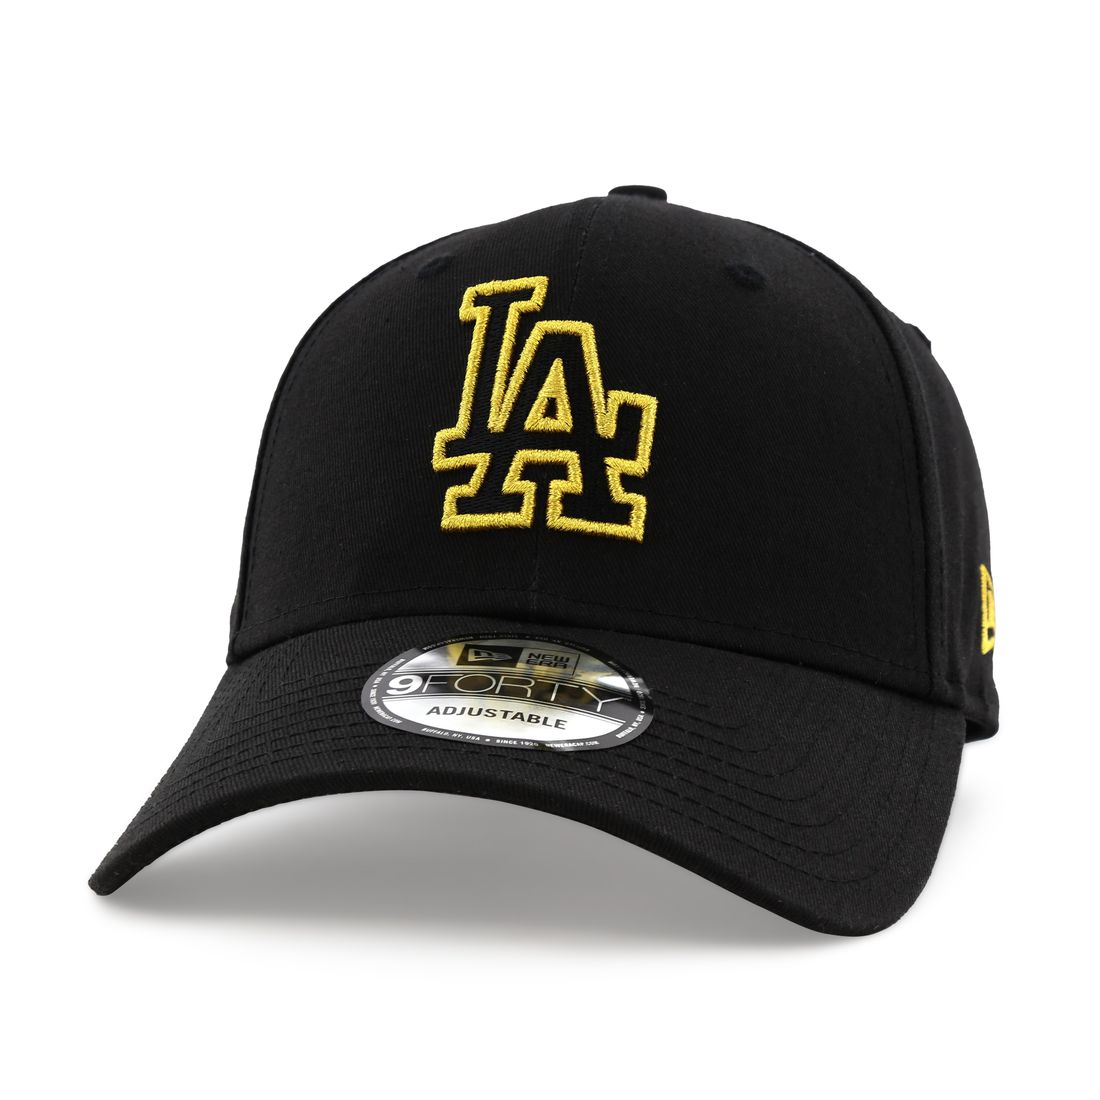 قبعة للرجال تحمل شعار معدني لفريق لوس أنجلوس دودجرز بلاك بيس من نيو إيرا لون أسود